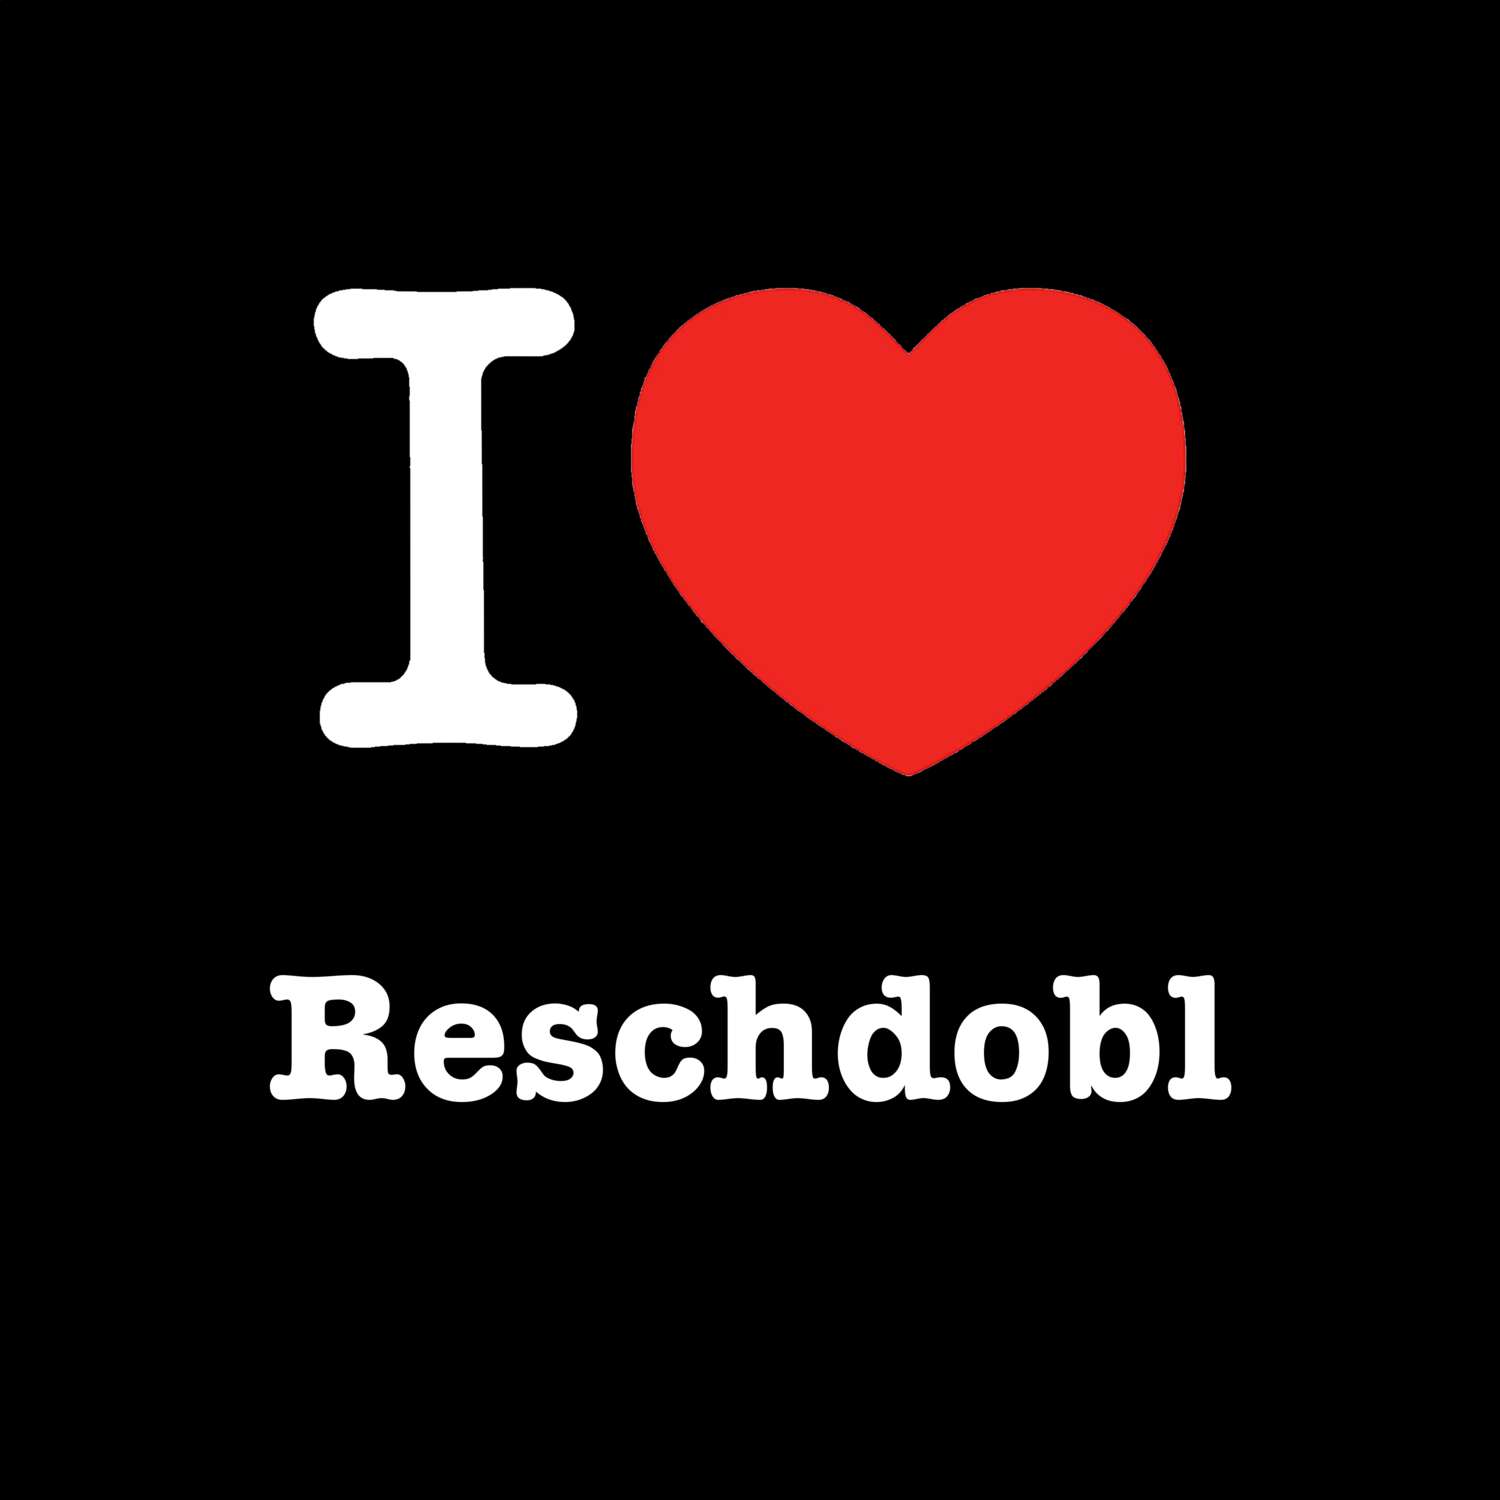 Reschdobl T-Shirt »I love«